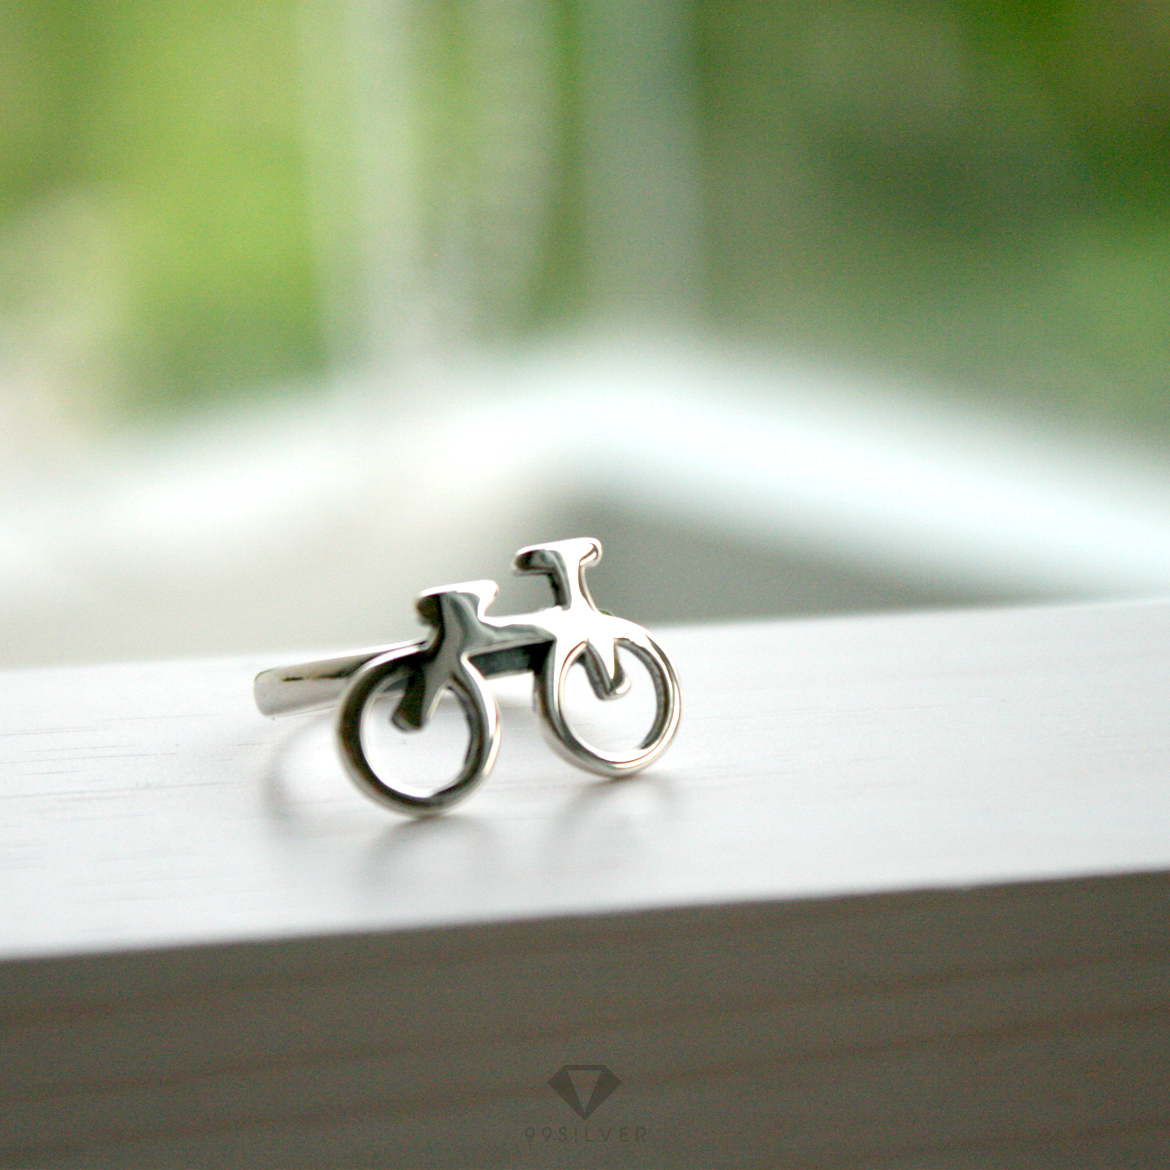 แหวนจักรยาน Bike ring เป็นเอกลักษณ์ หน้าแหวนกว้าง 19 มิลลิเมตร 